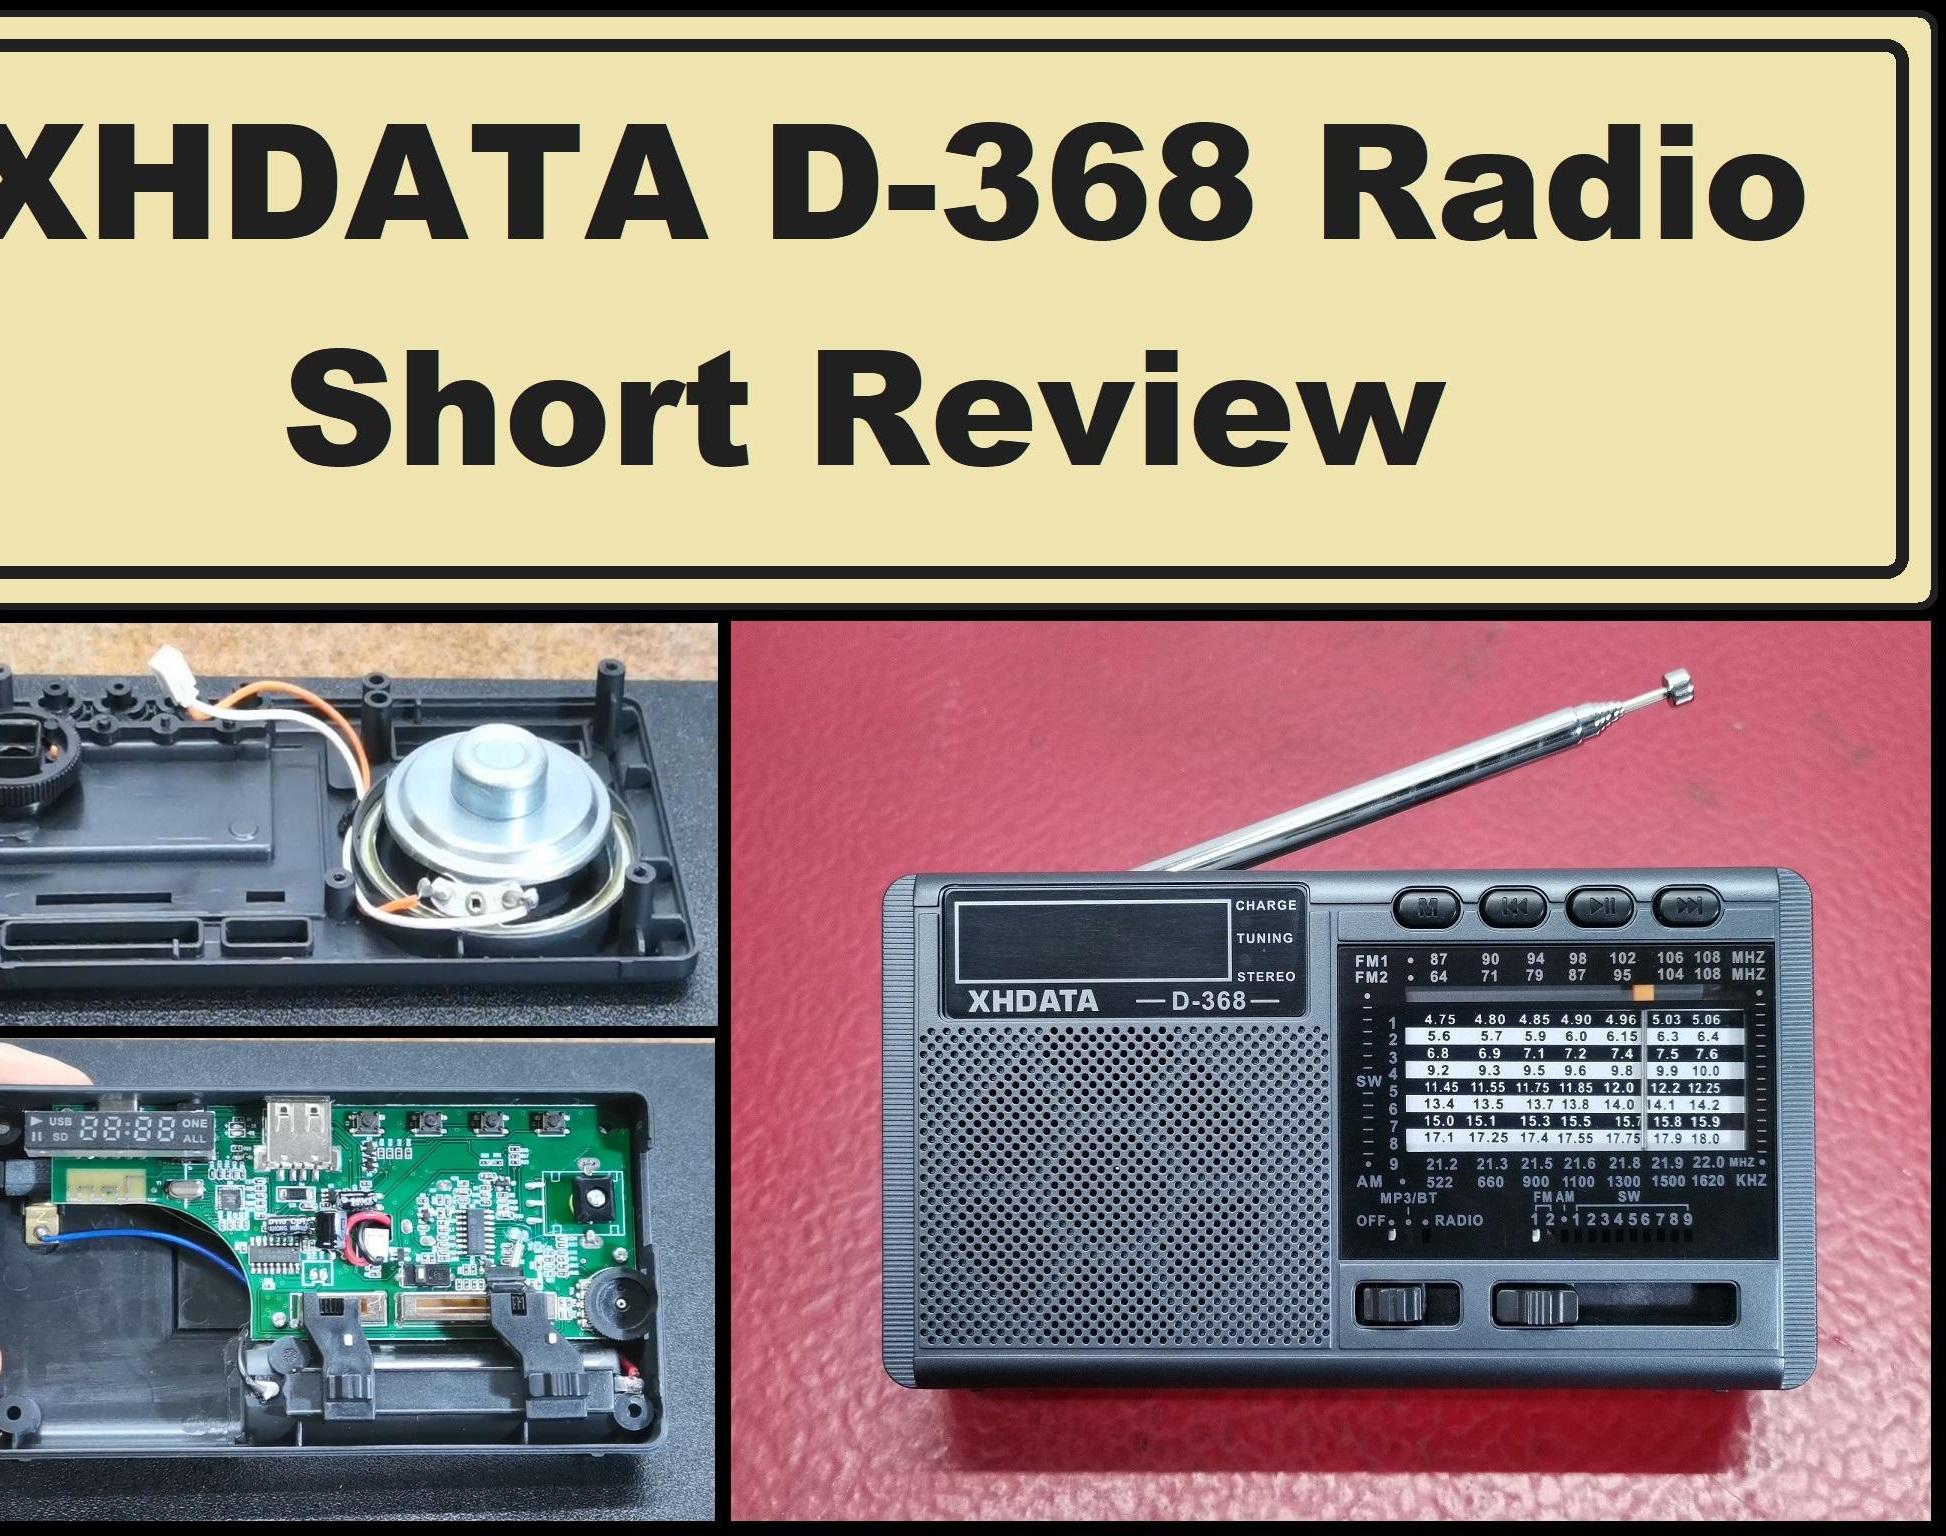 XHDATA D-368 Radio Short Review